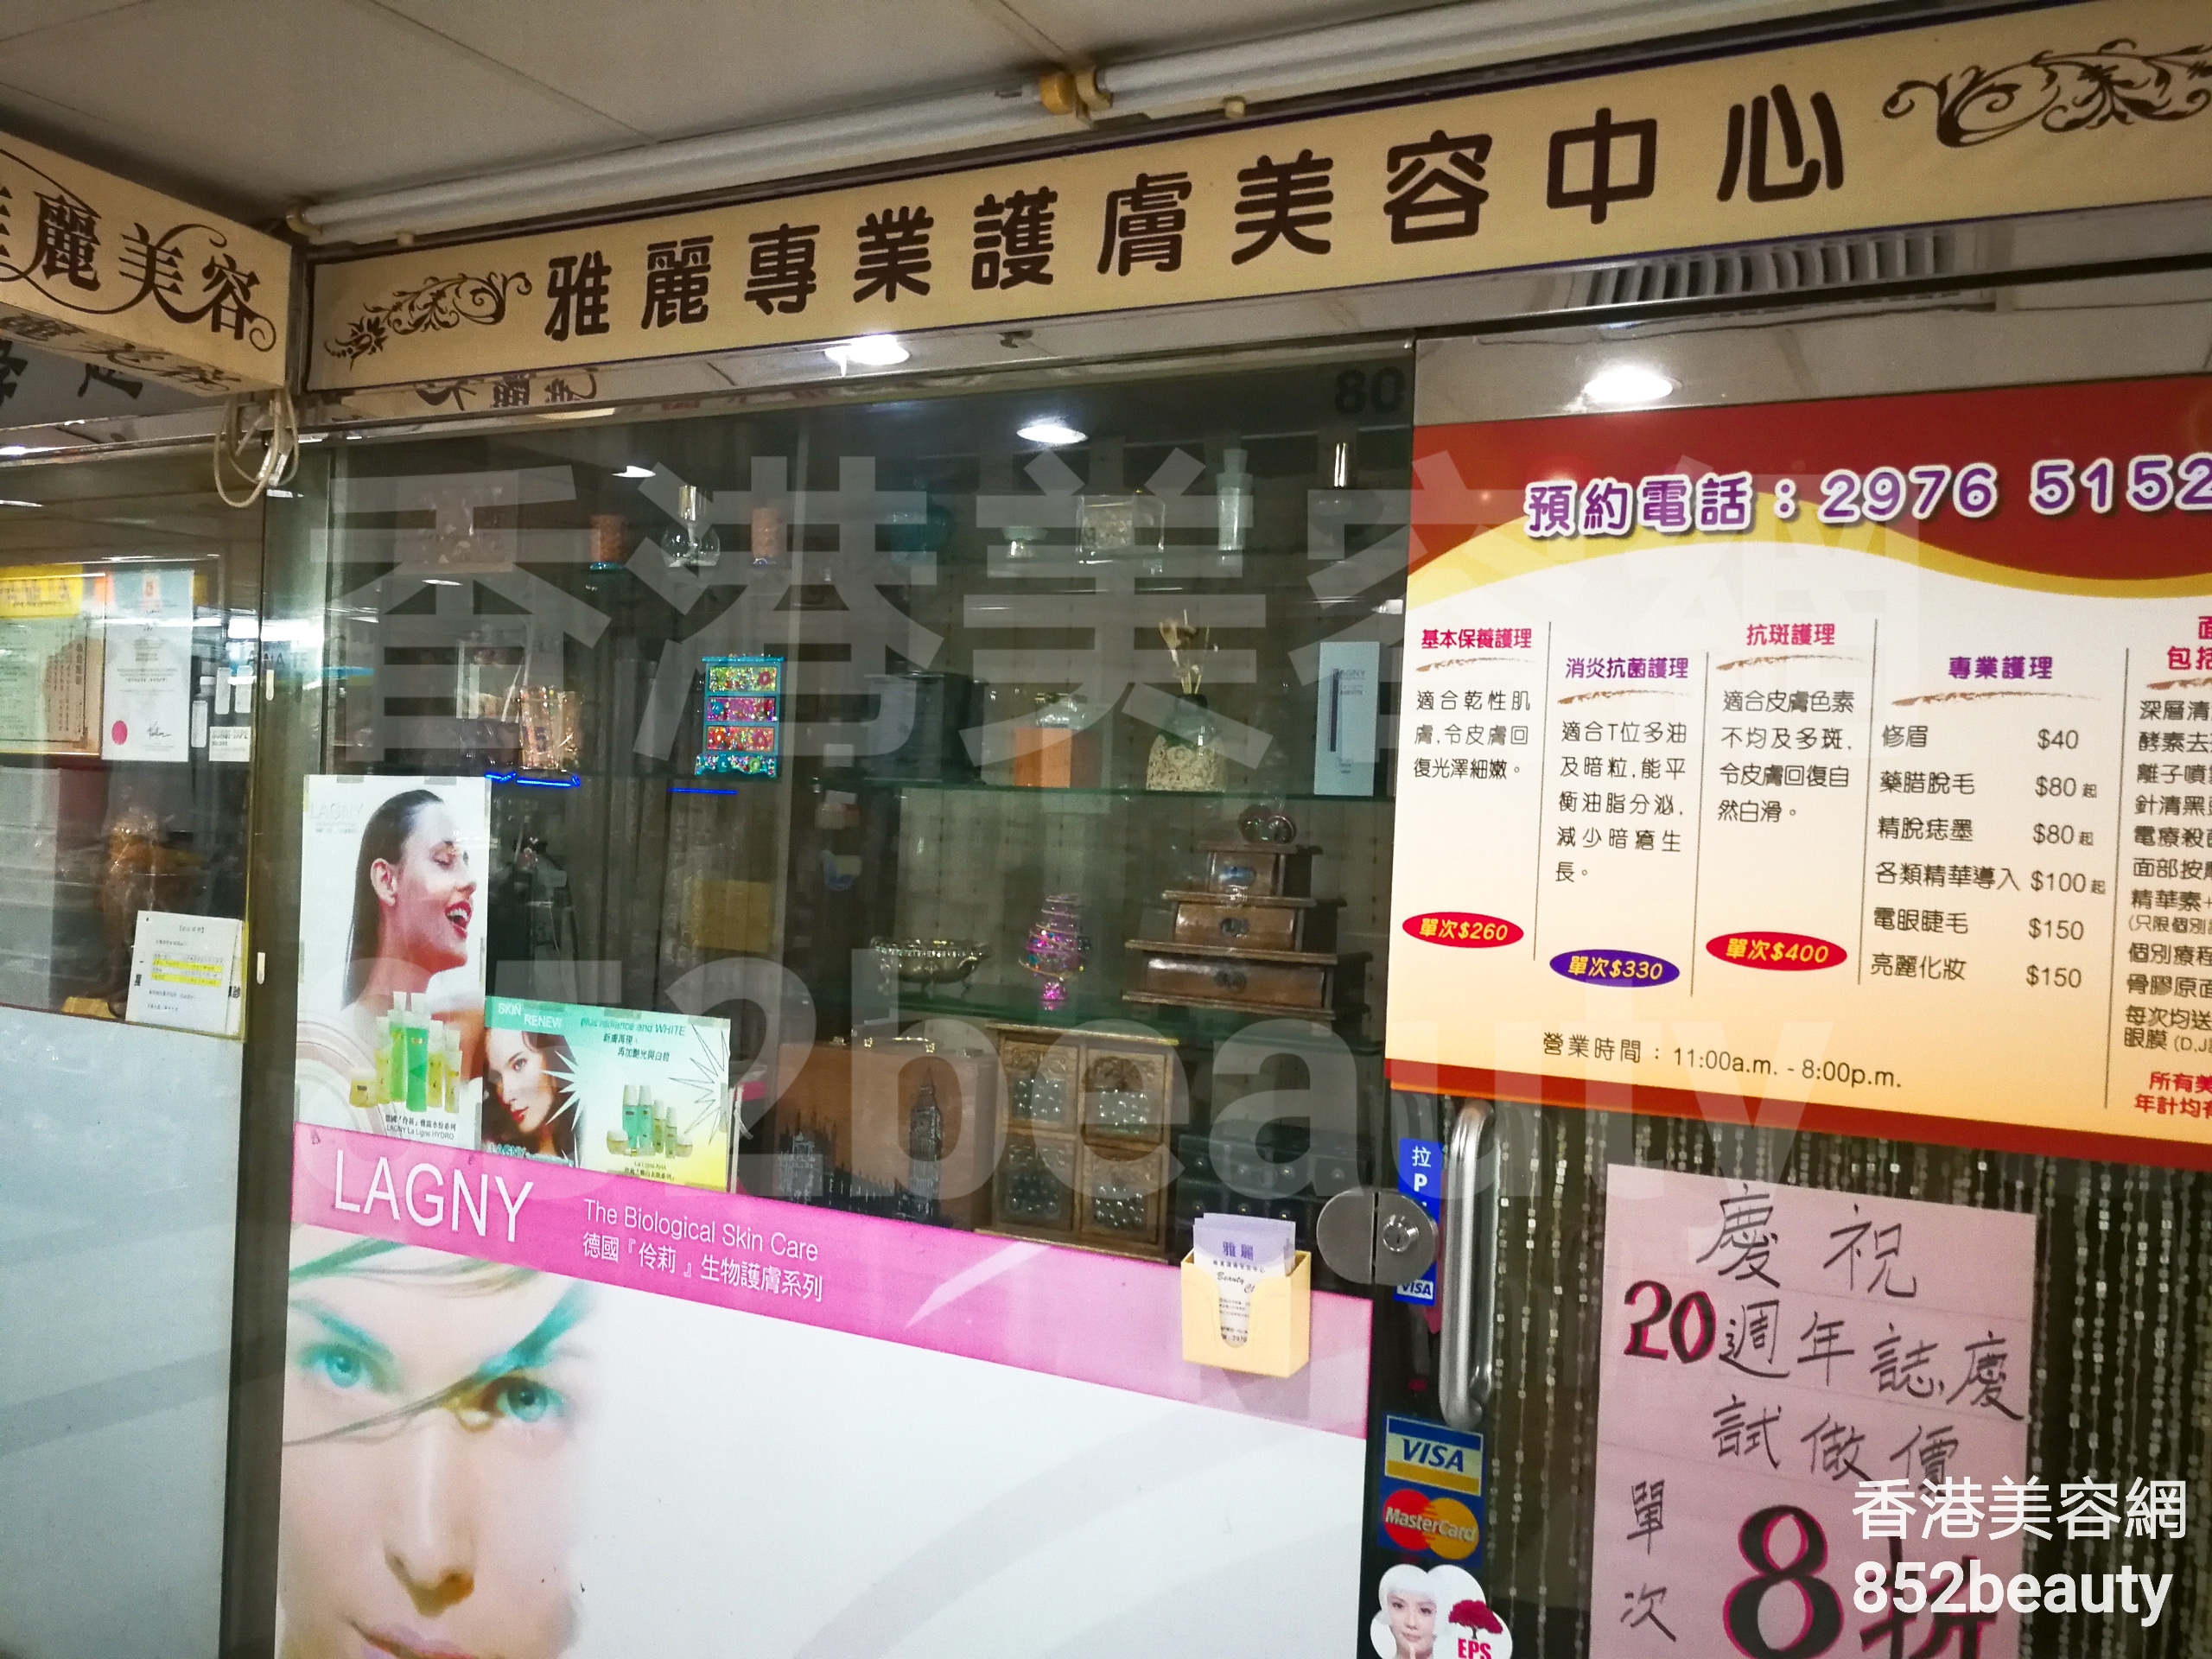 香港美容網 Hong Kong Beauty Salon 美容院 / 美容師: 雅麗 專業護膚美容中心